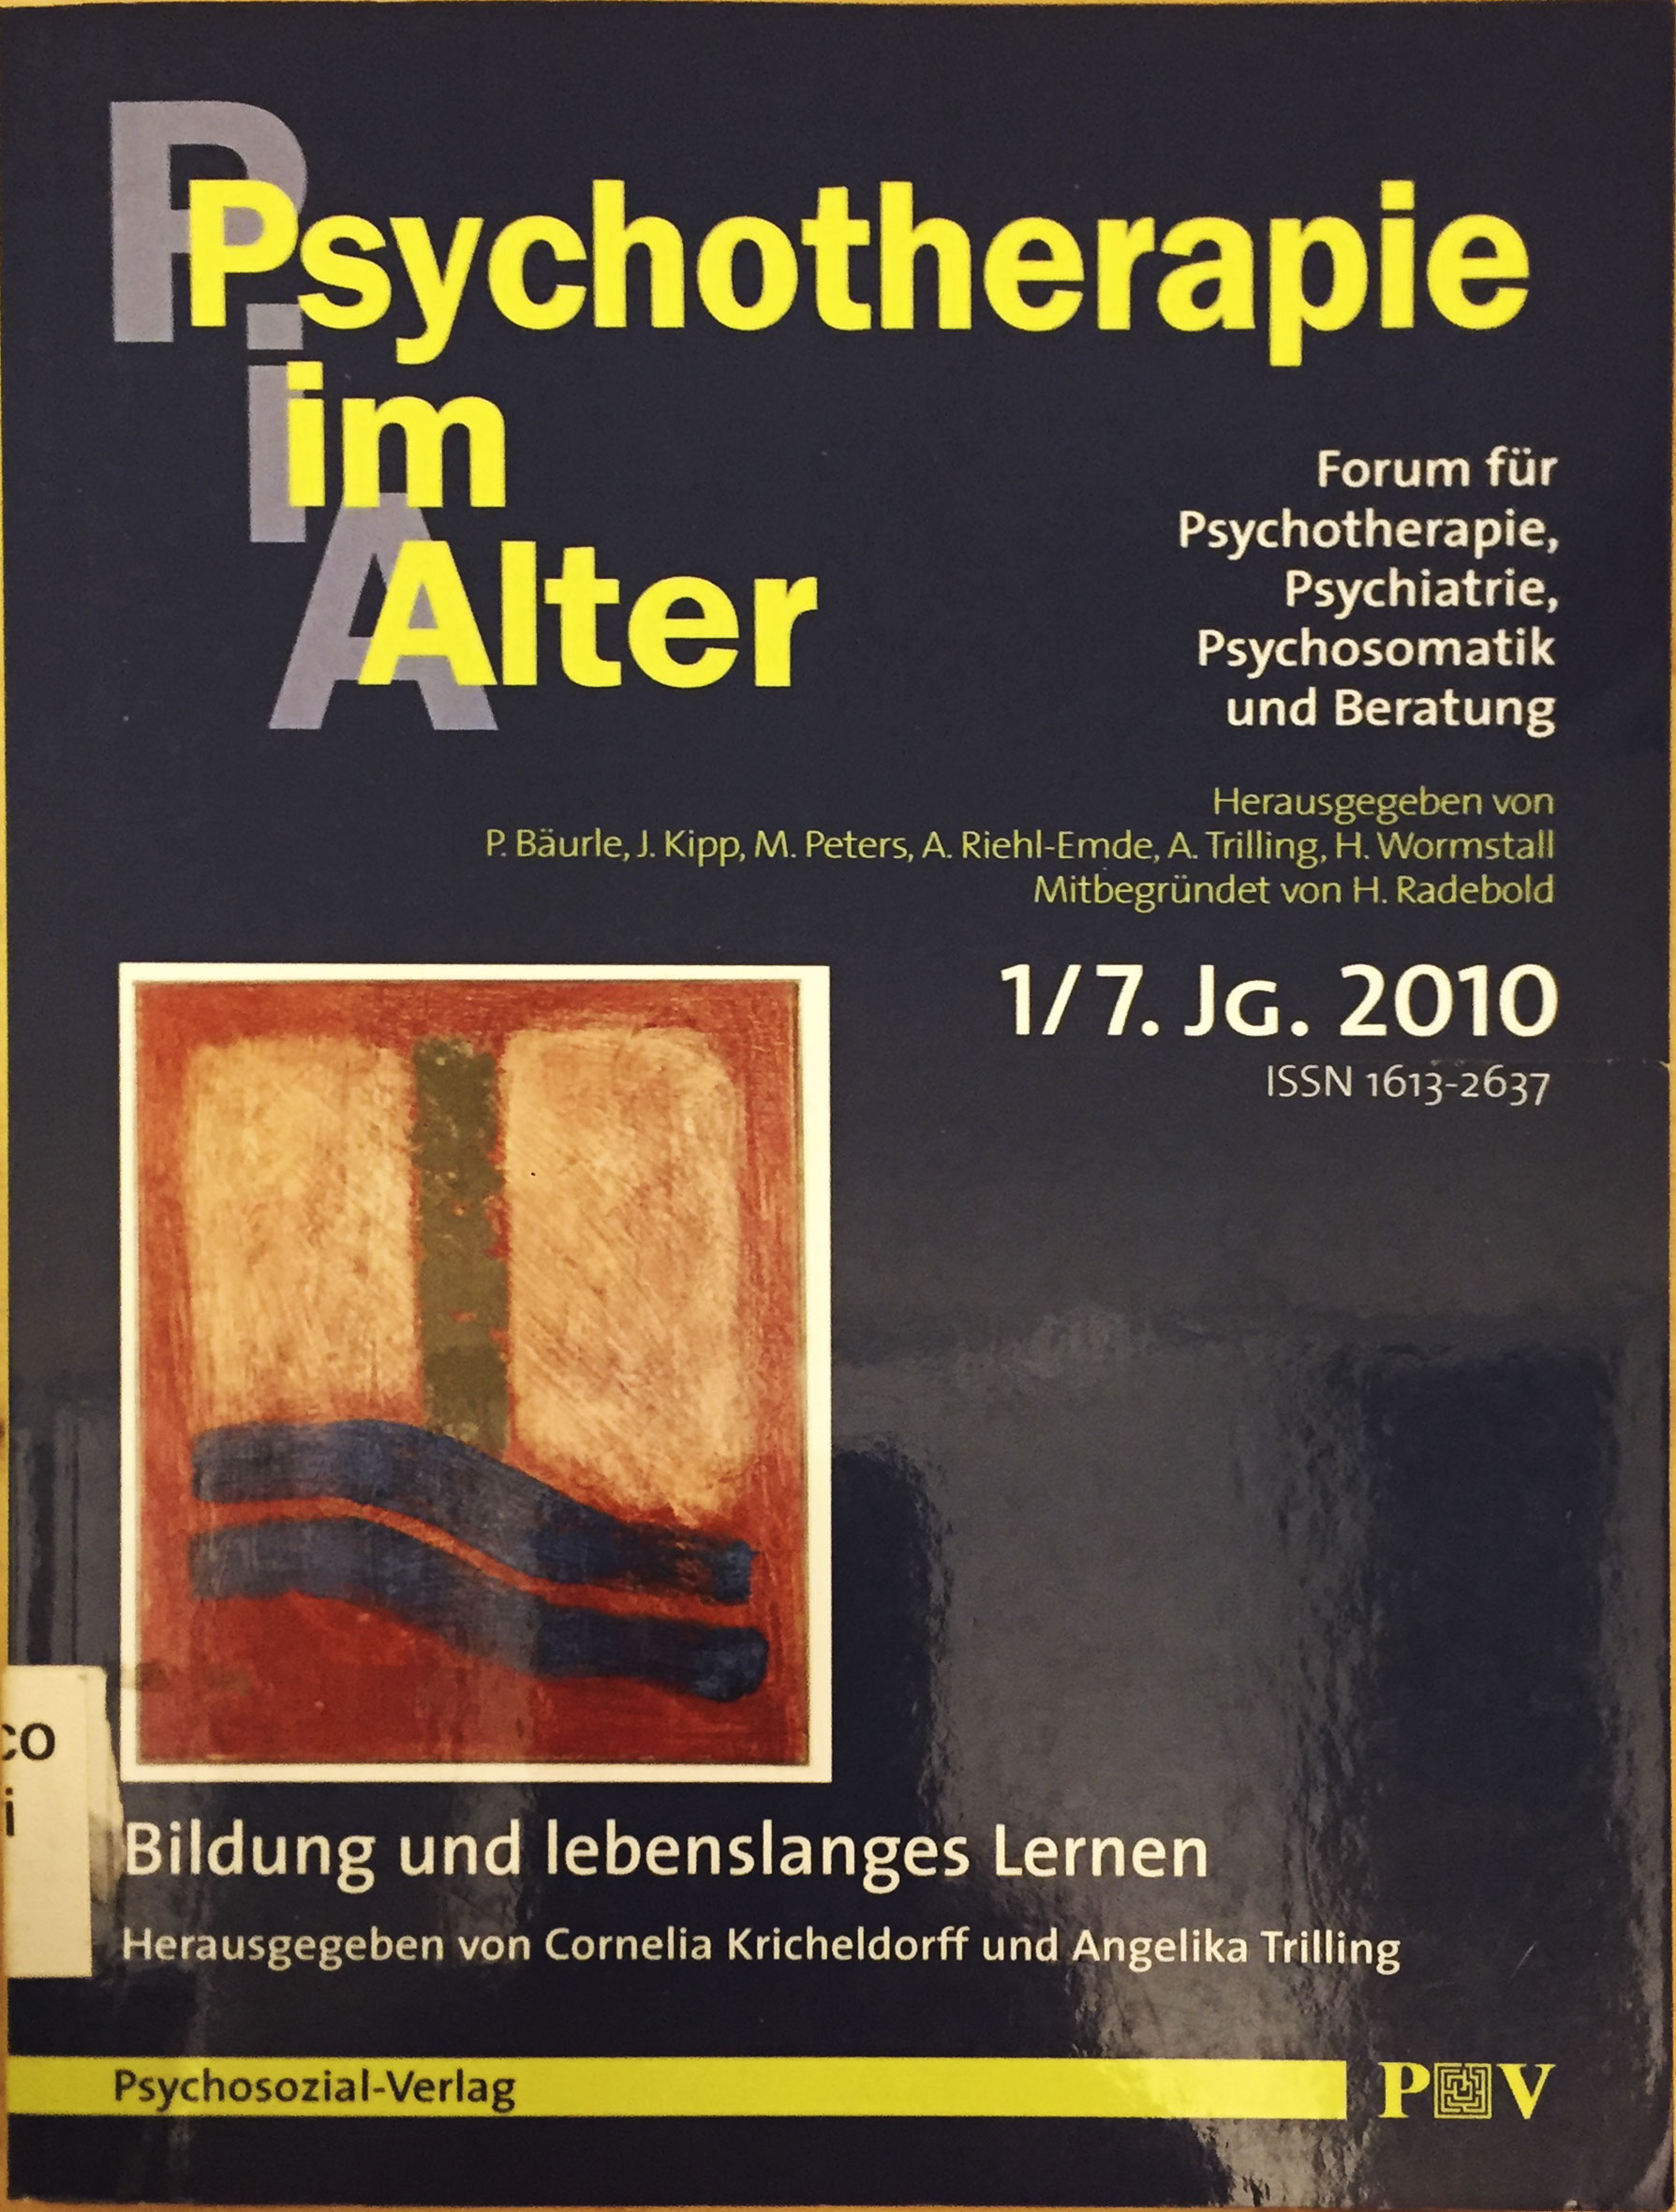 Bäuerle, Kipp, Peters, Riehl-Emde, Trilling, Wormstall: Psychotherapie im Alter Nr. 25: Bildung und lebenslanges Lernen